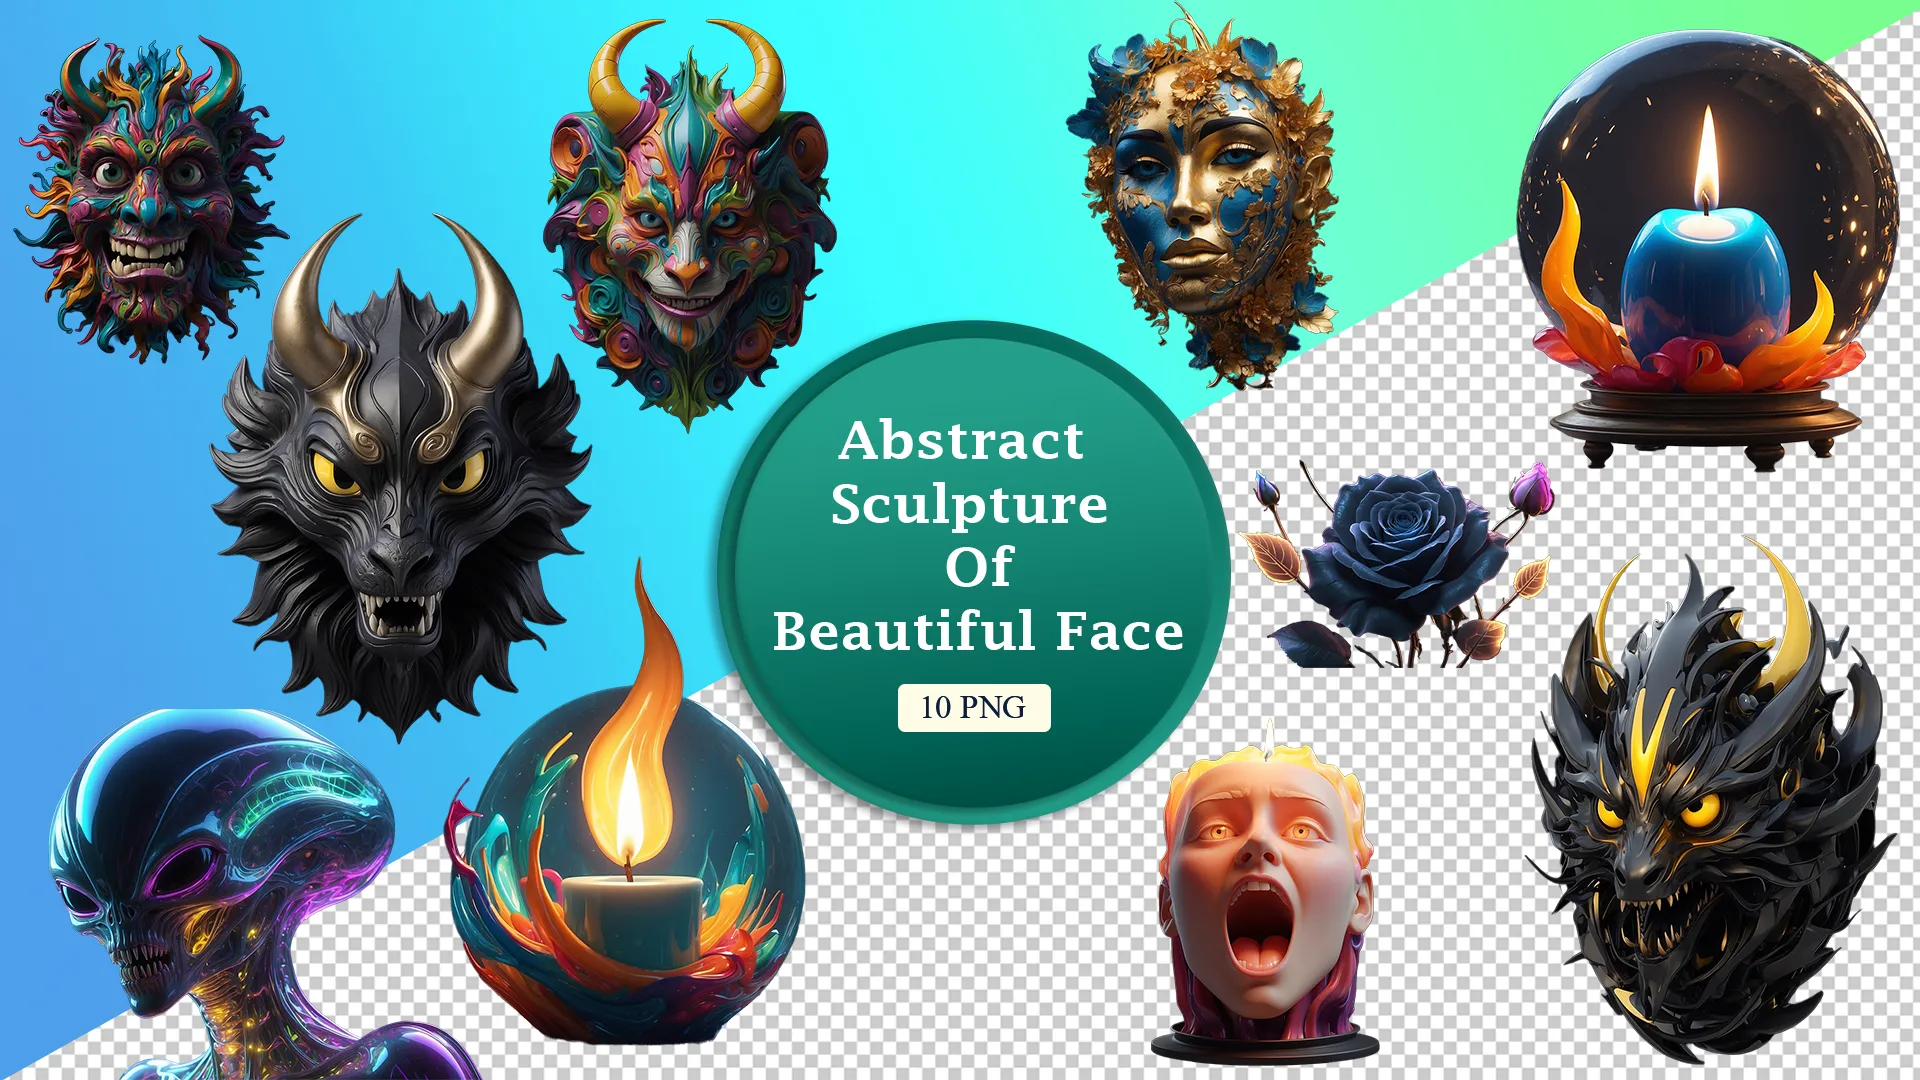 Unique Faces and Fire 3D